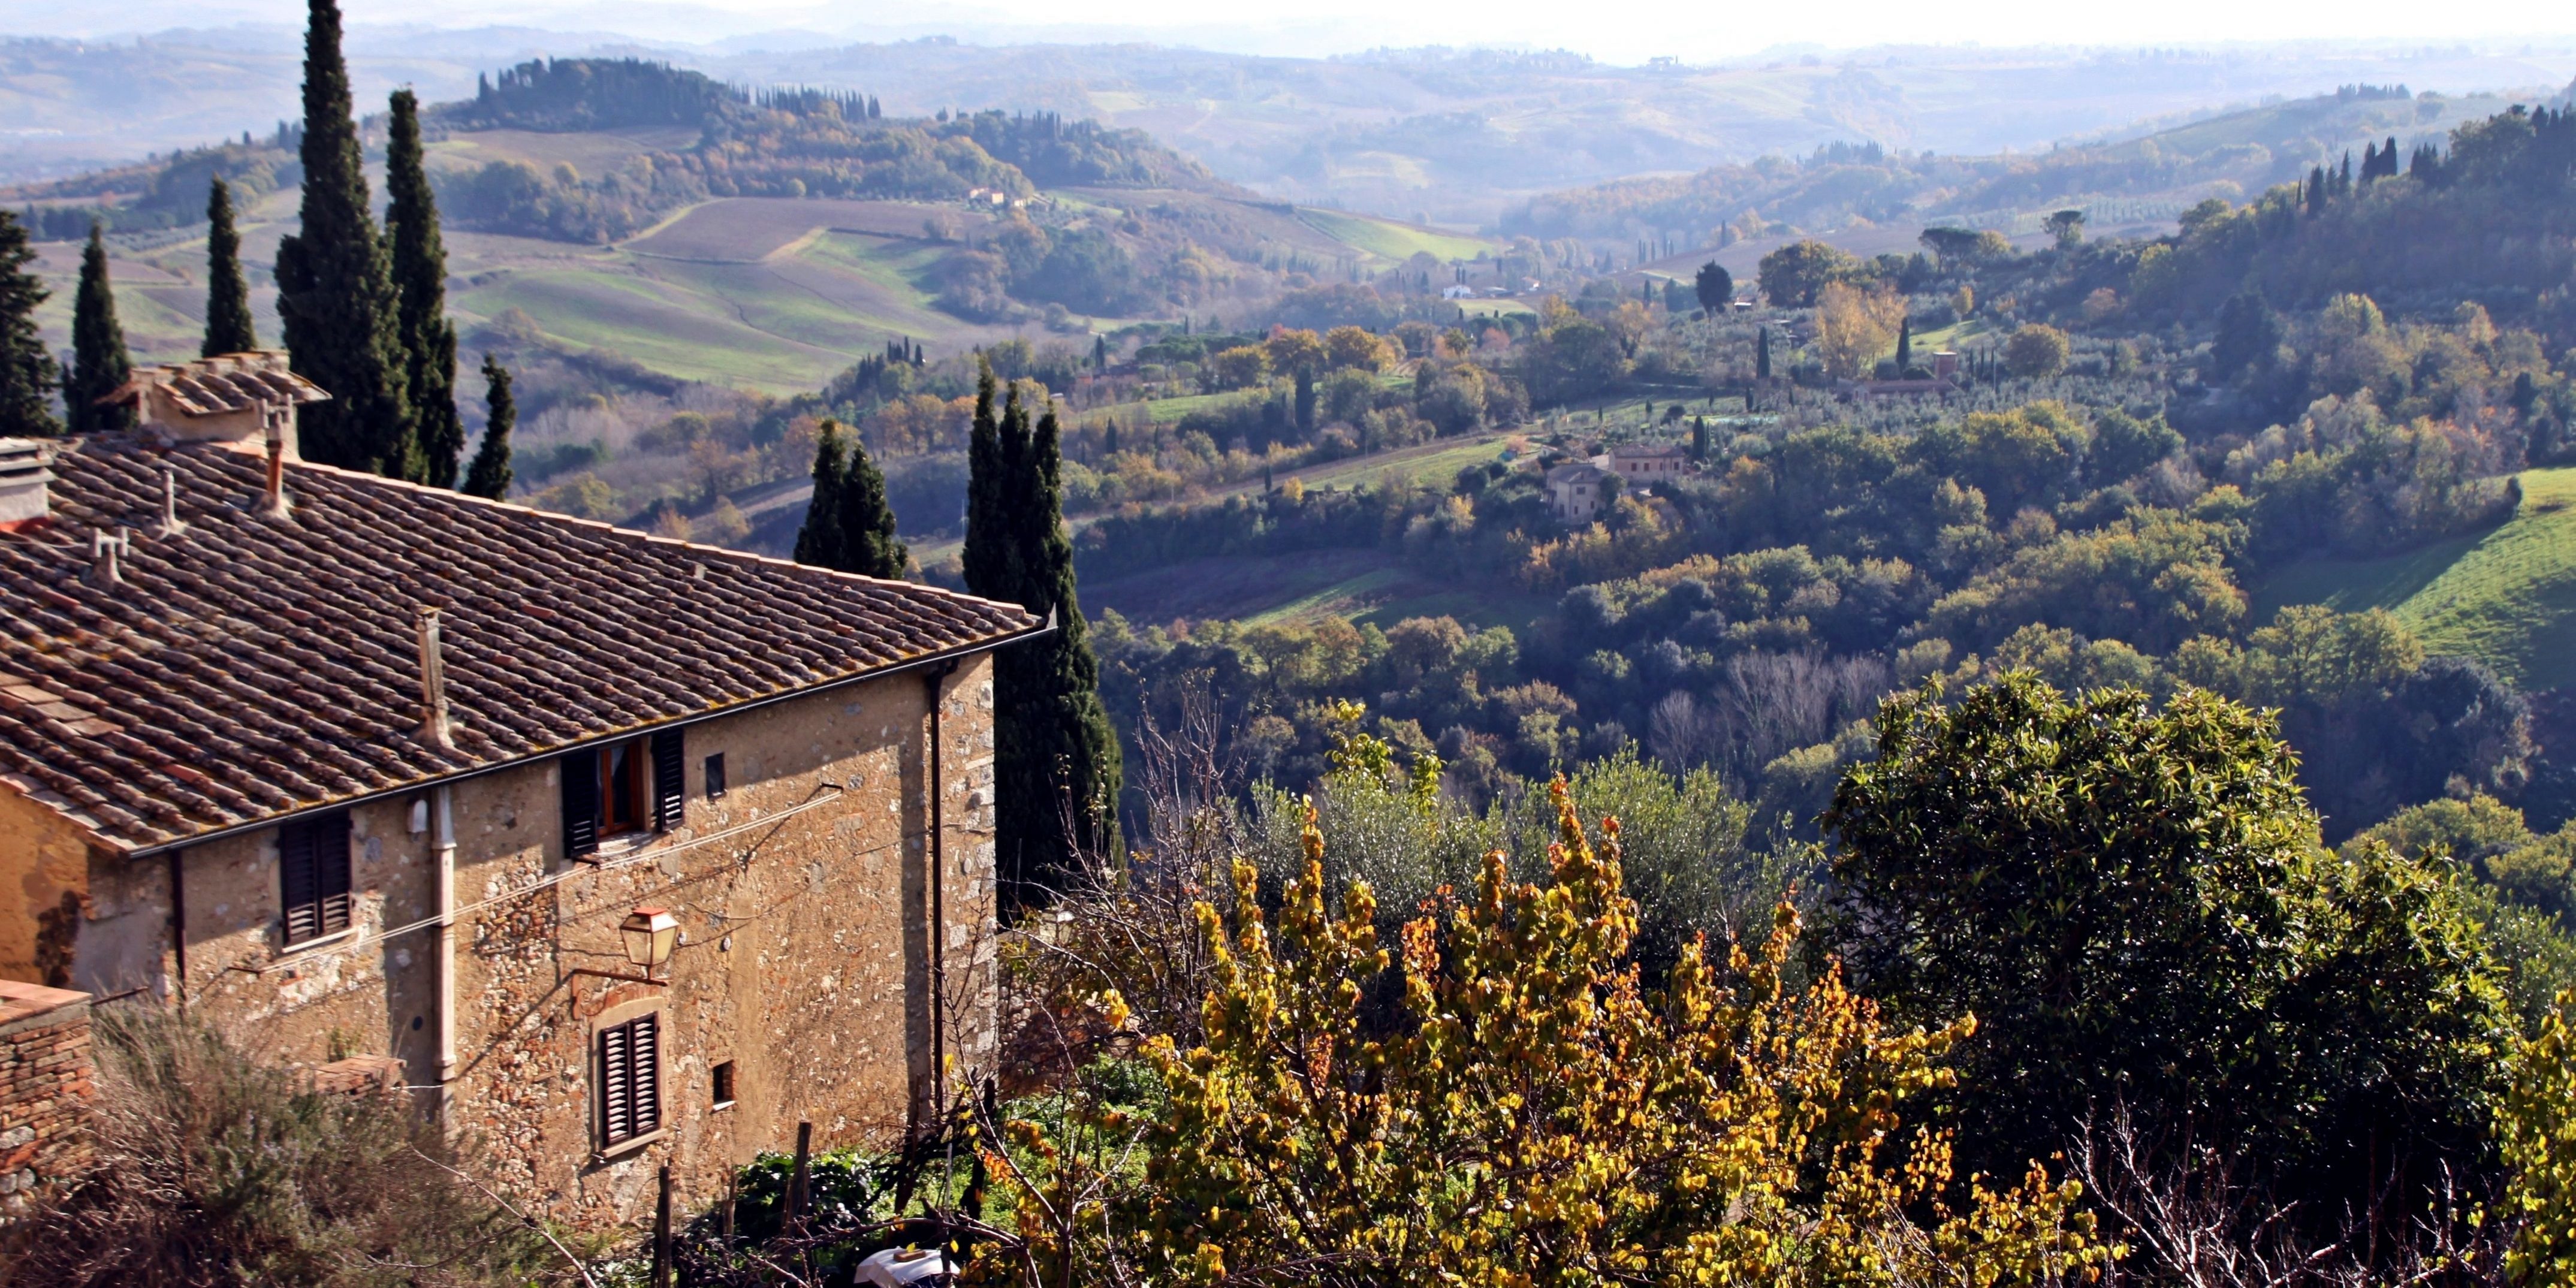 La Toscana 1– Buen vino y campiña